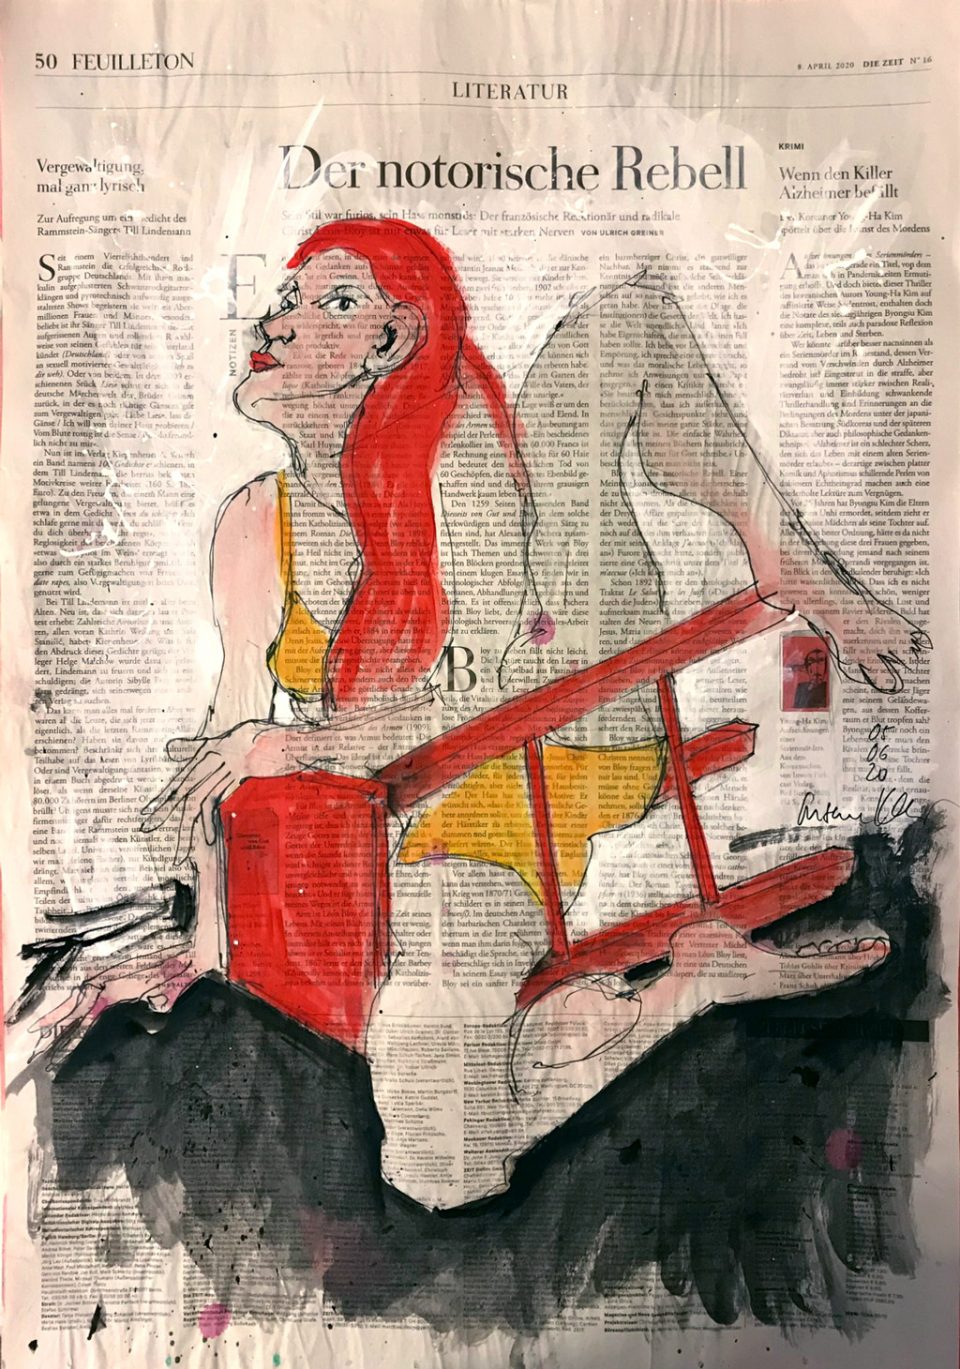 Der notorische Rebell – Figüerliche Illustration auf ganzer Zeitungsseite.